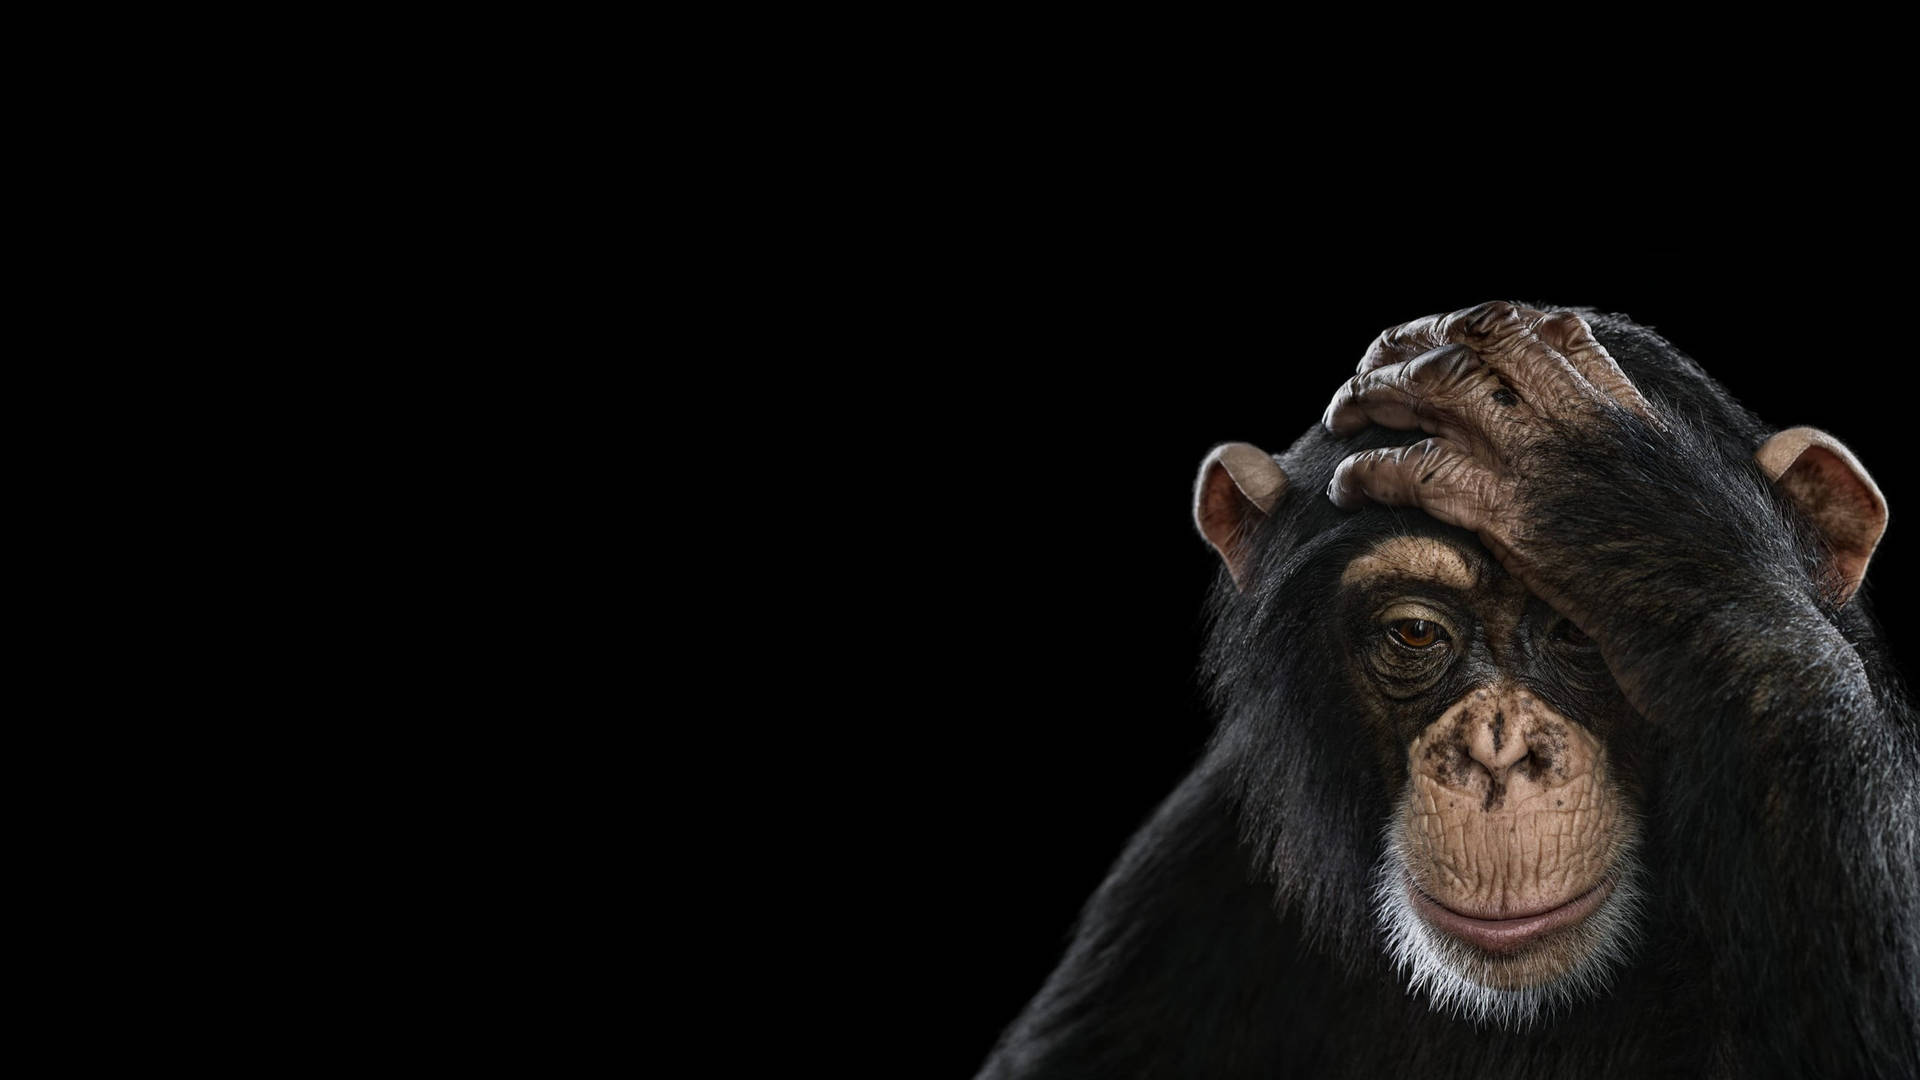 Black Chimpanzee Photography Wallpaper